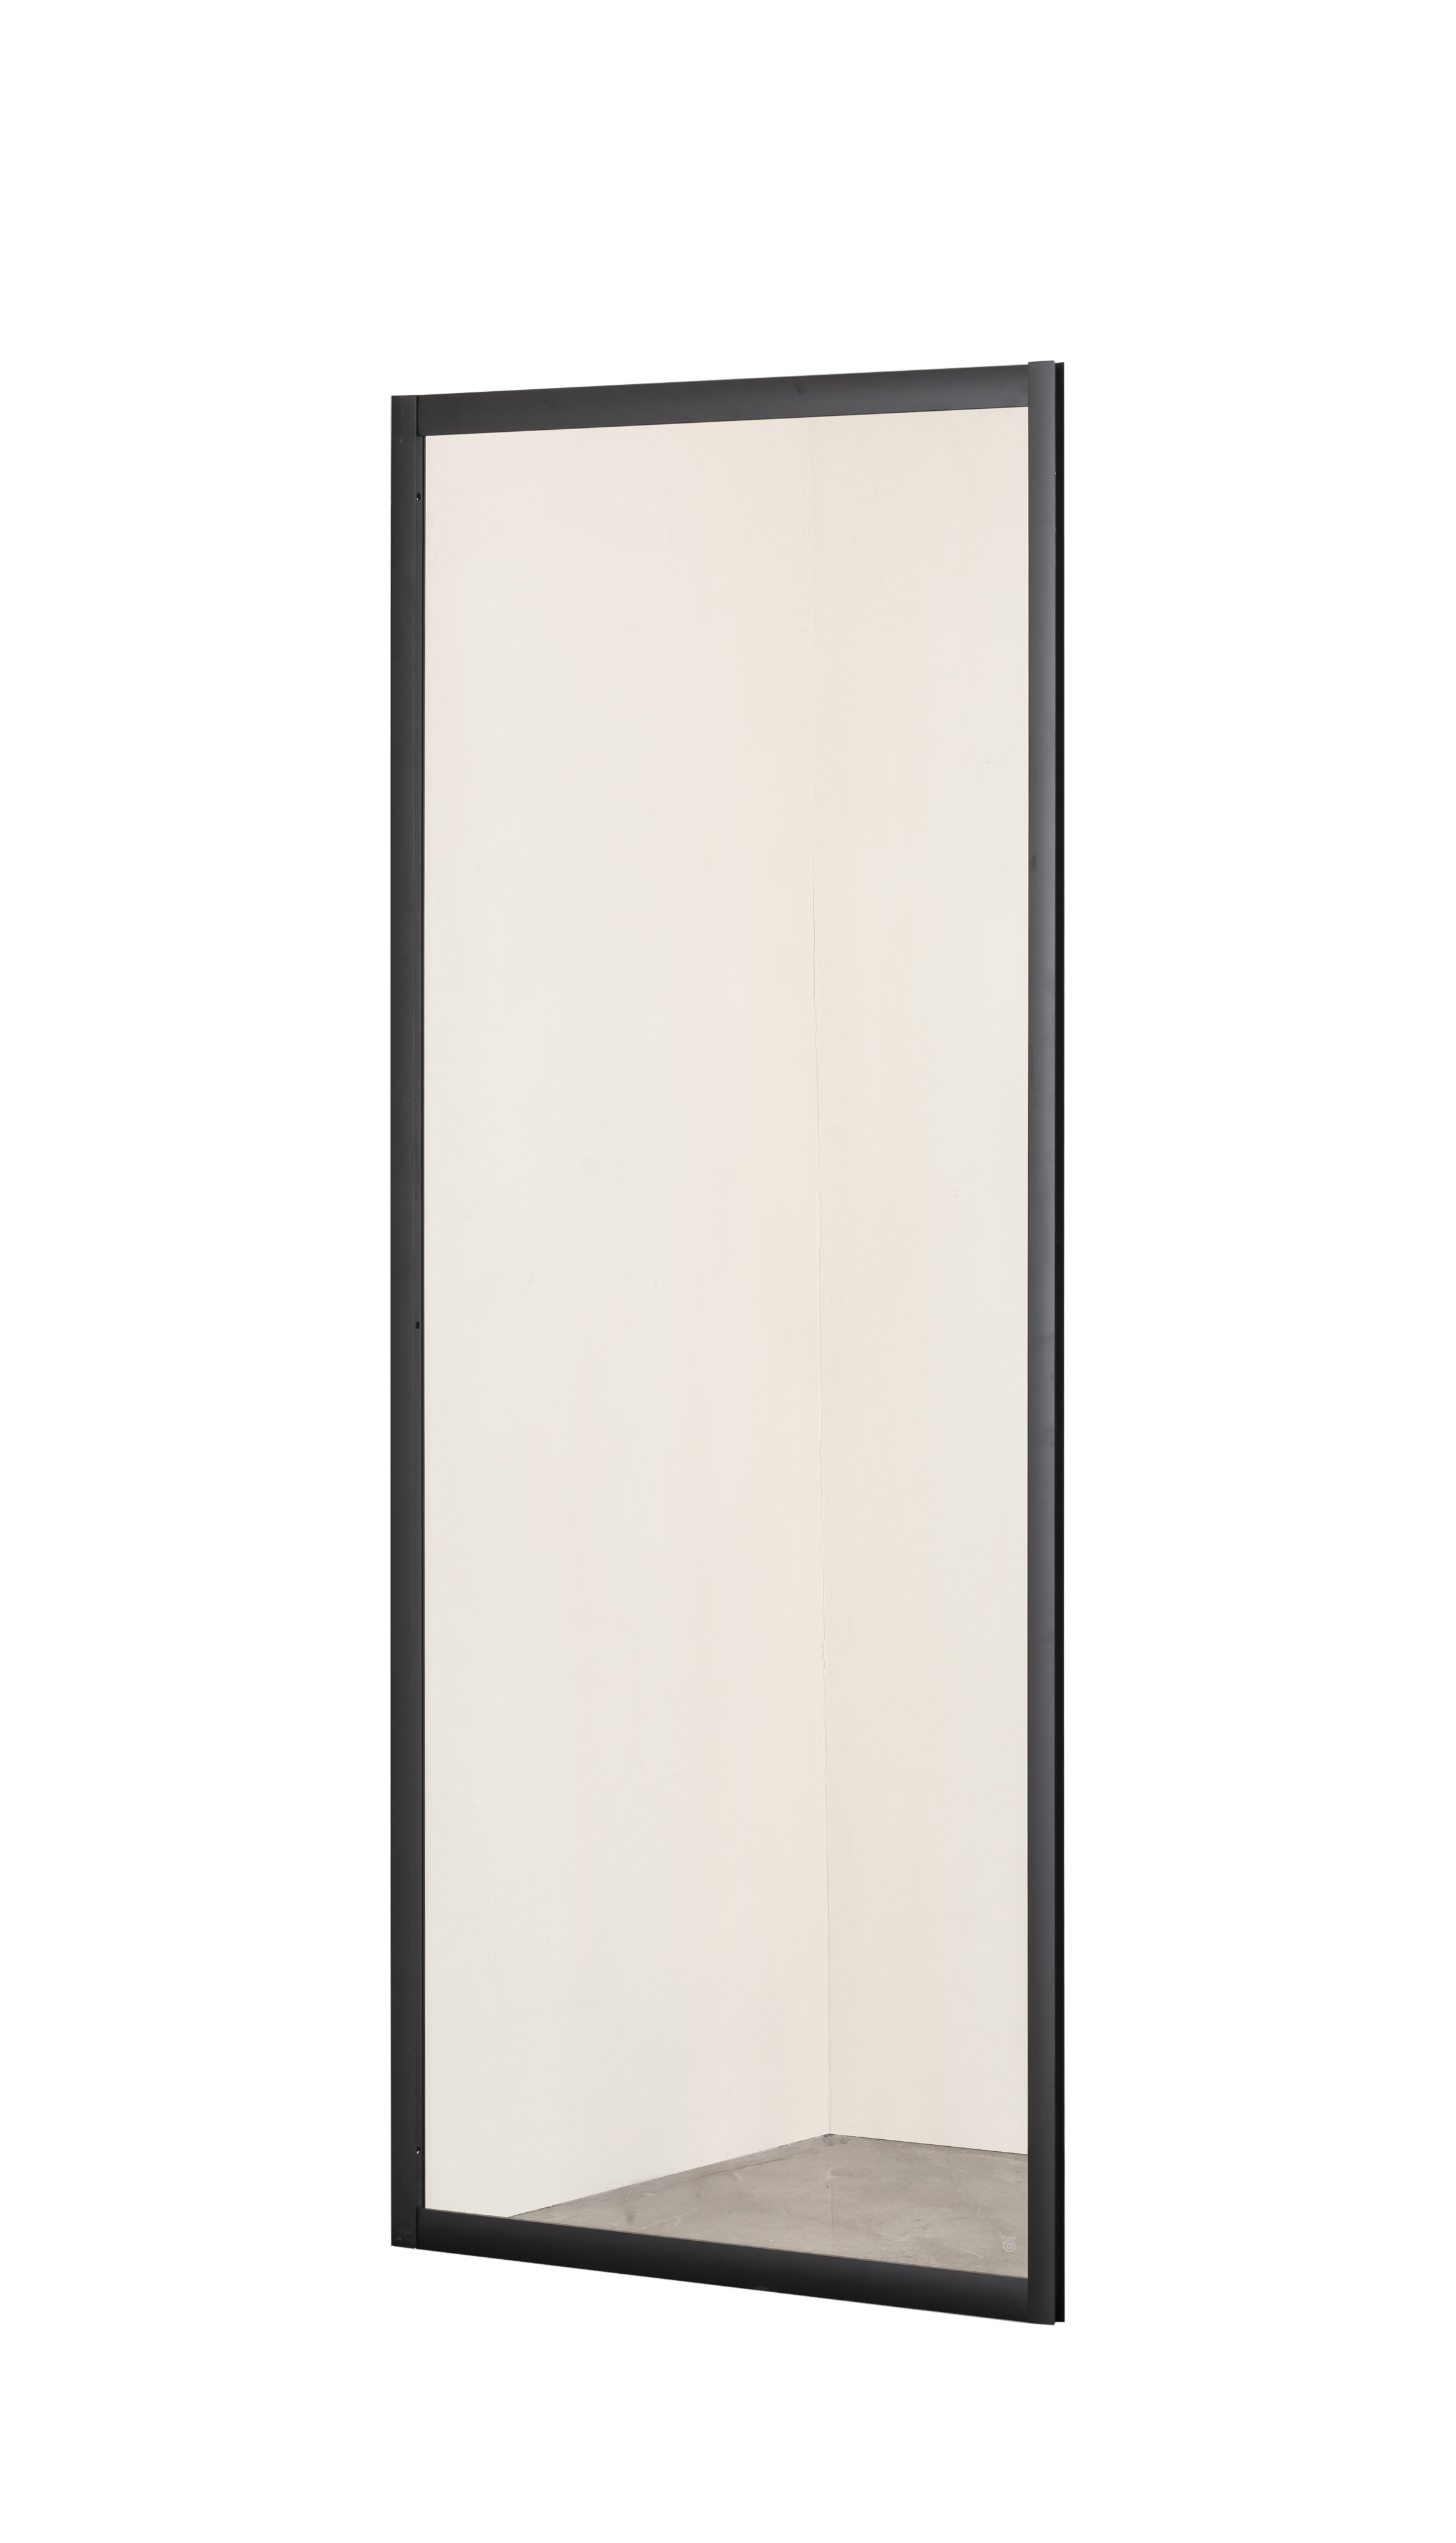 Боковая стенка Taliente 90x185 см TA-09-1CB стекло прозрачное, профиль черный